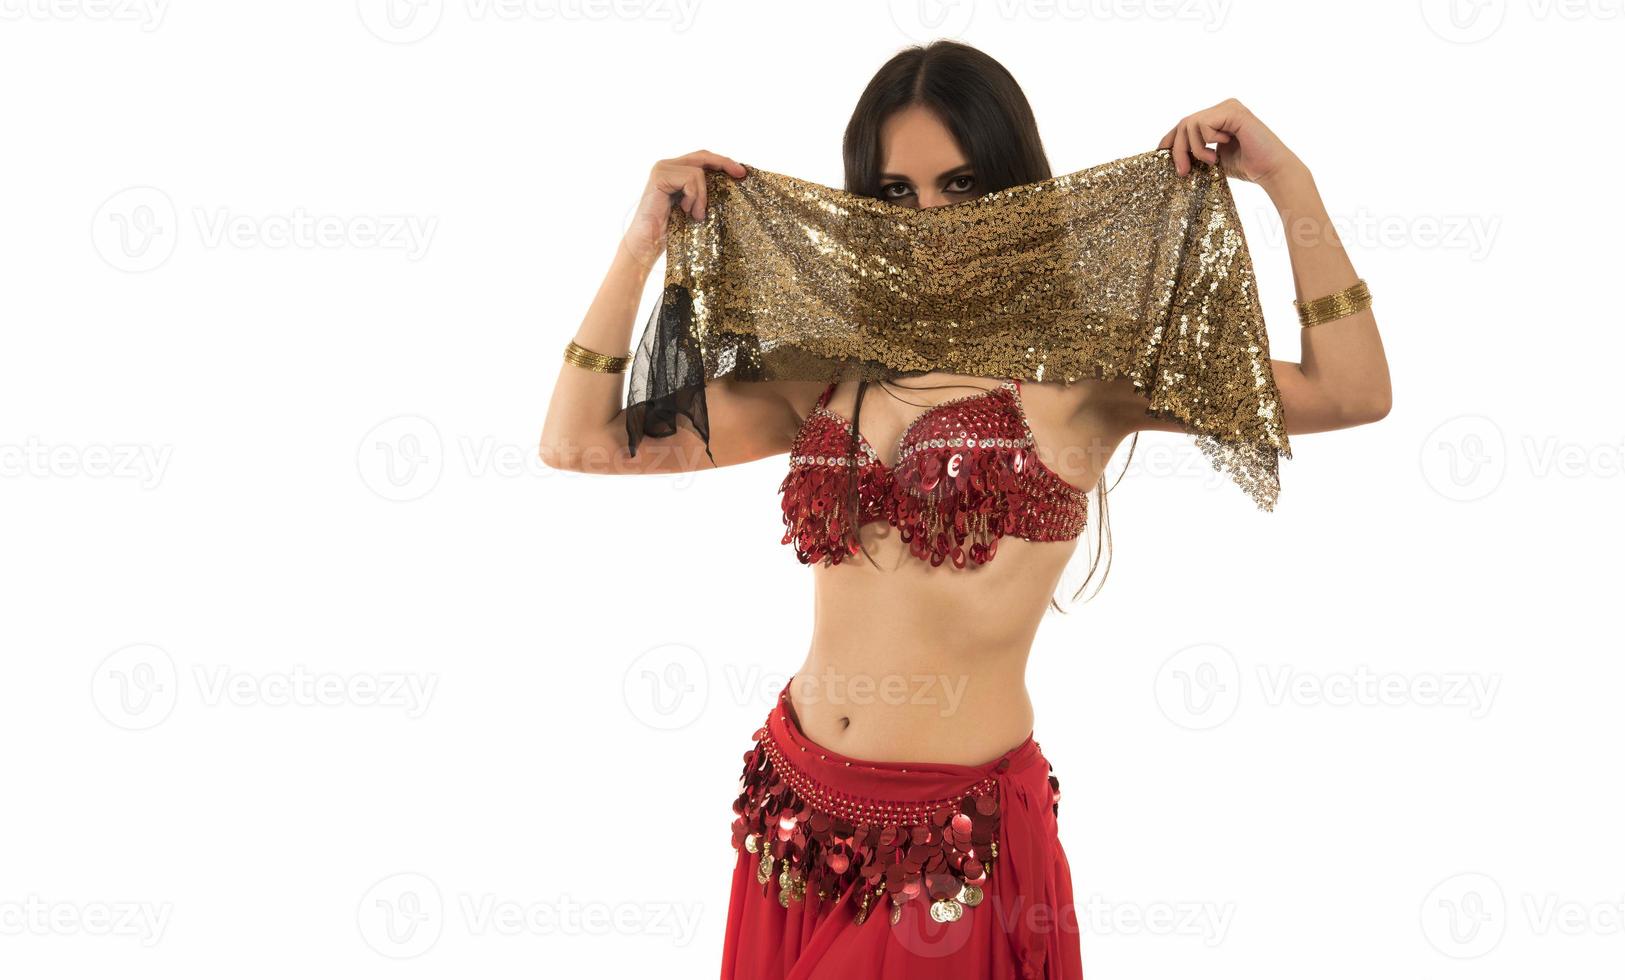 schöne junge Frau der Bauchtänzerin im wunderschönen roten und schwarzen Kostümkleid foto